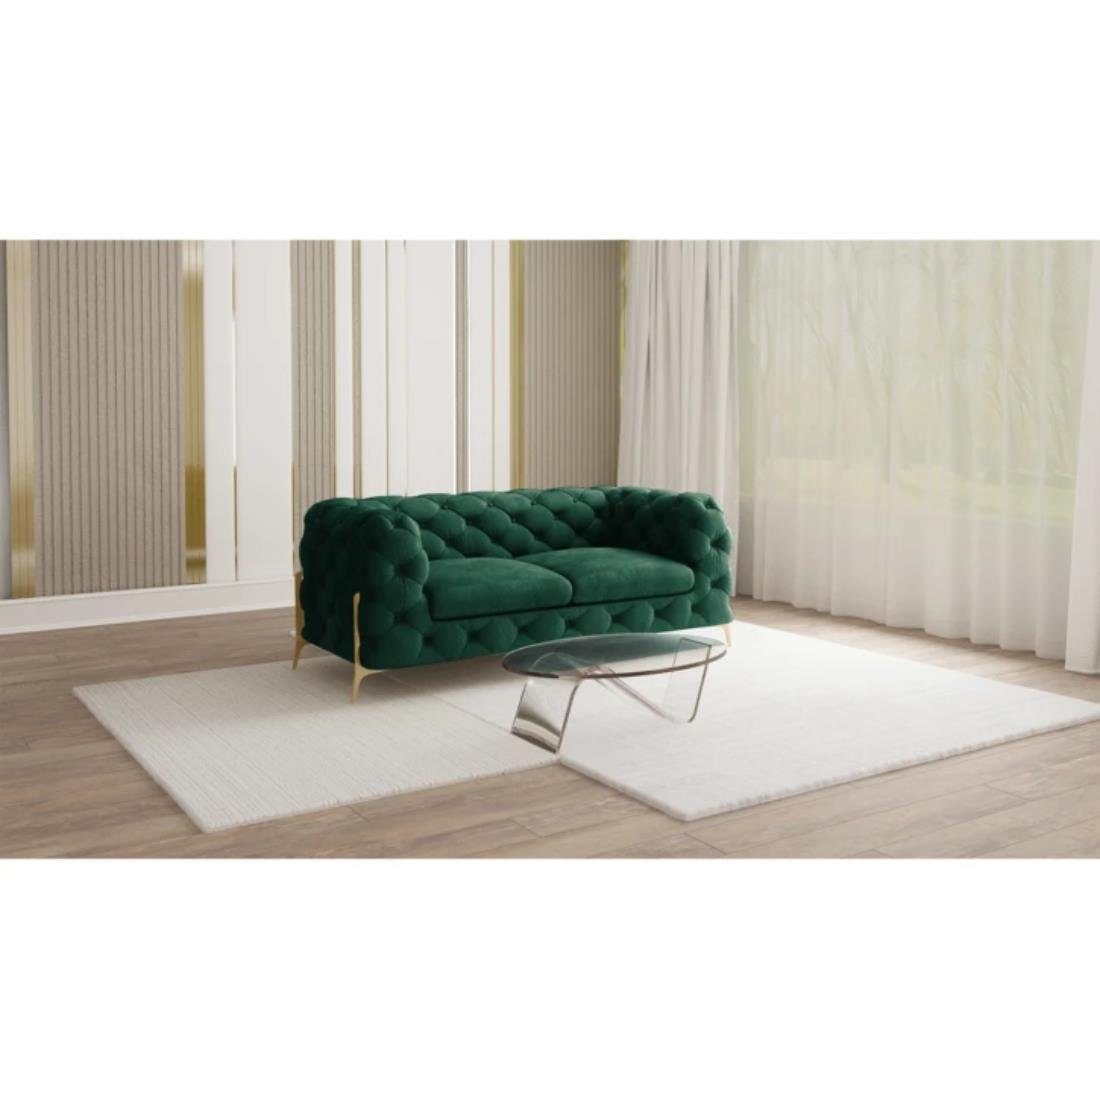 S-Style Möbel 2-Sitzer Ashley Chesterfield Sofa mit Goldene Metall Füßen, mit Wellenfederung Flasche Grün